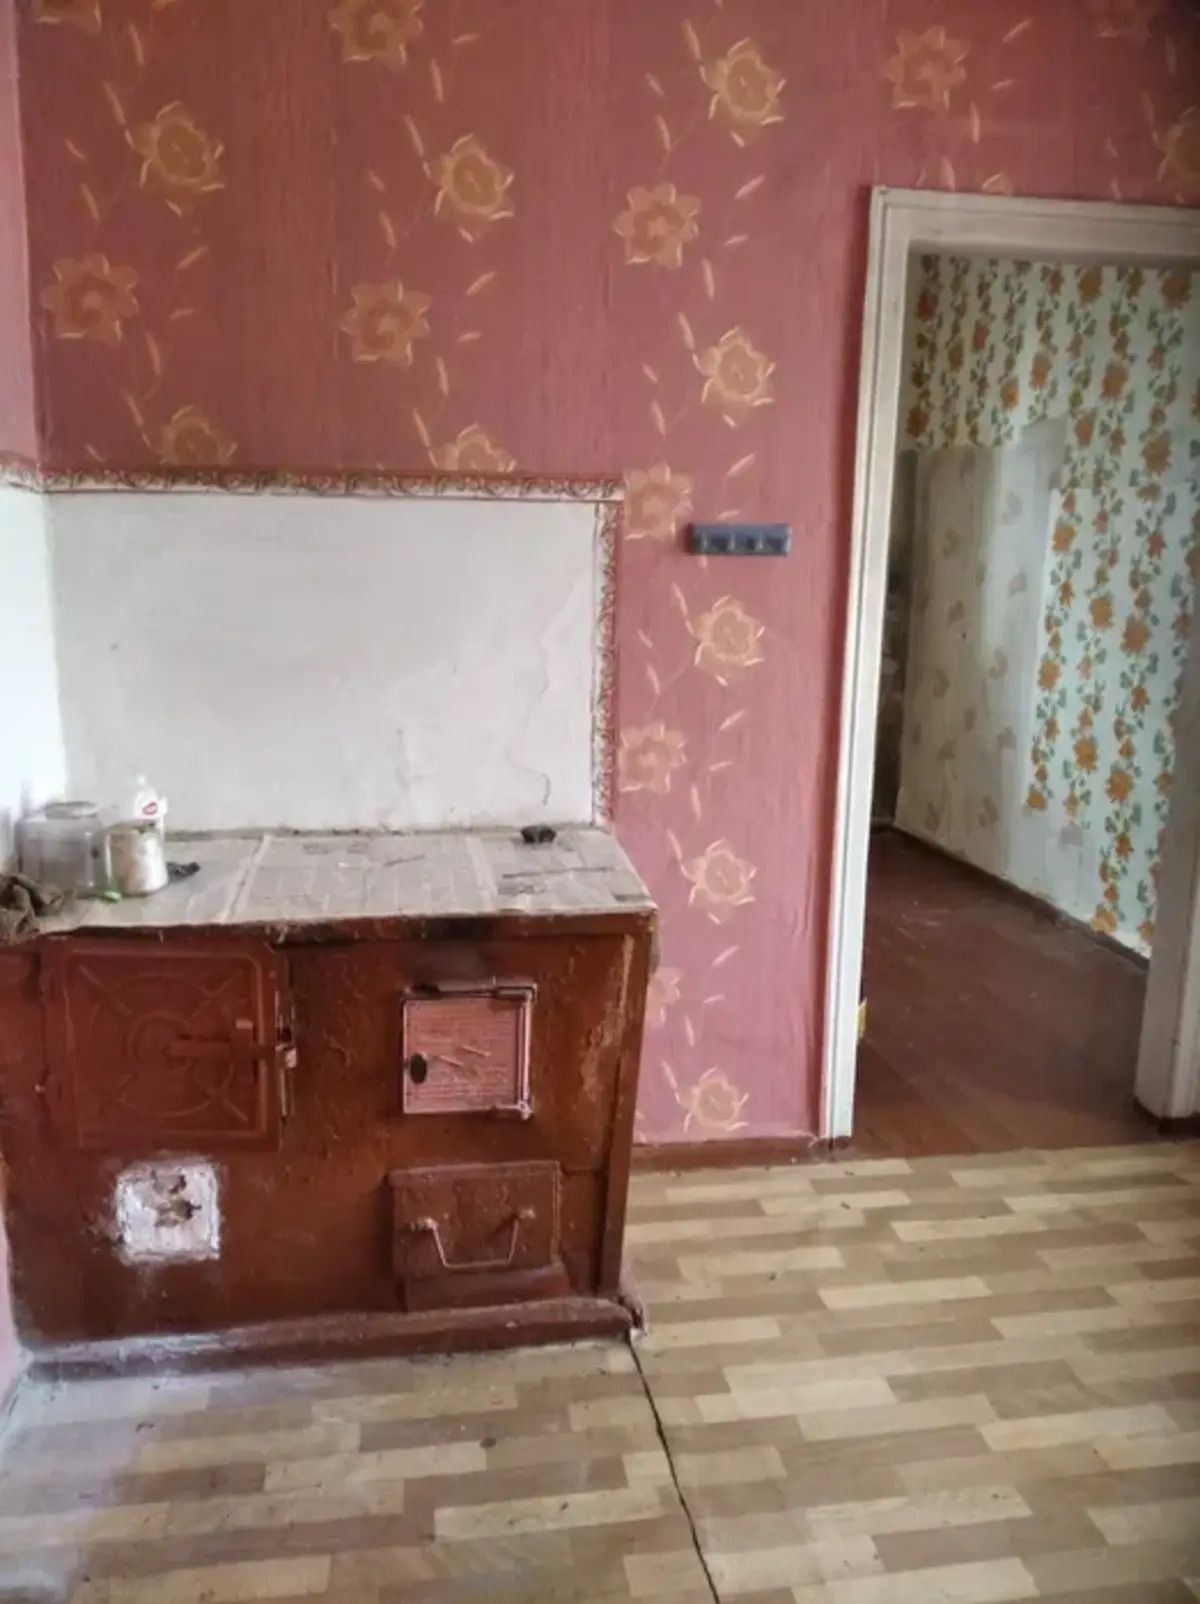 Одна из самых дешевых квартир в Украине - как выглядит жилье за более чем 1 тысячу долларов - Недвижимость